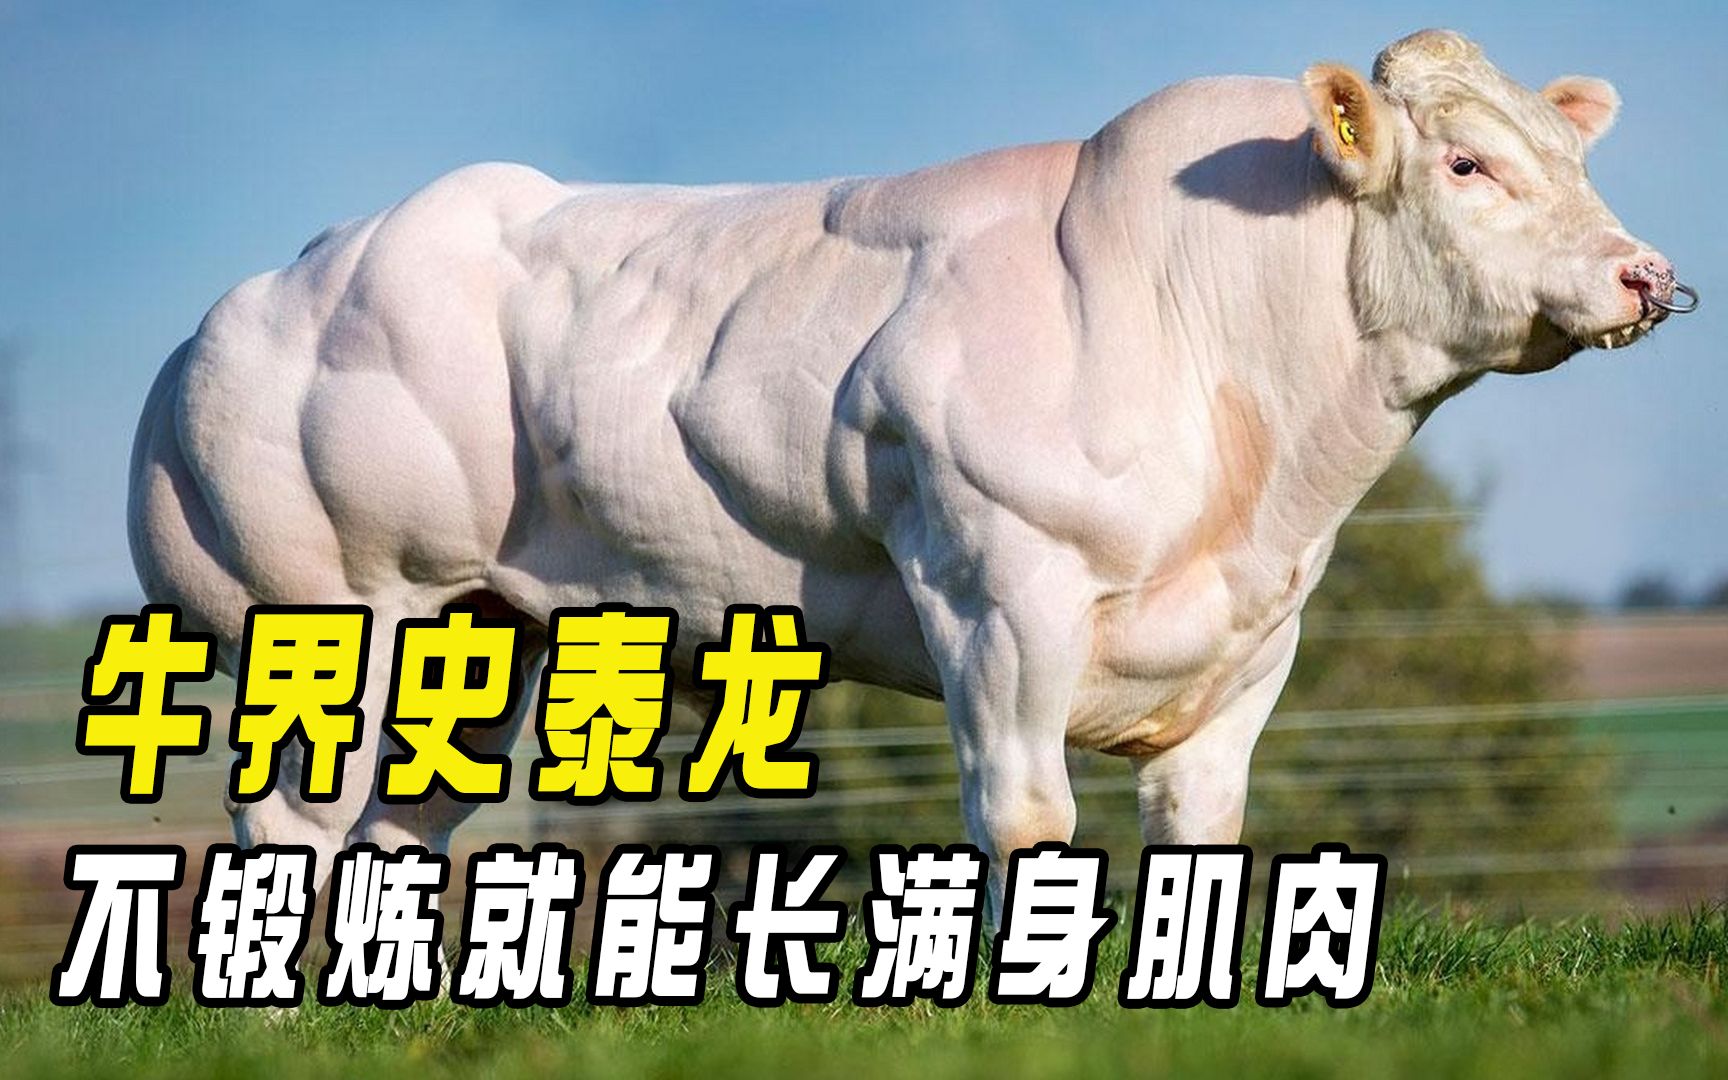 牛界史泰龙,不锻炼就能长满身肌肉,肌肉壮硕如猛虎